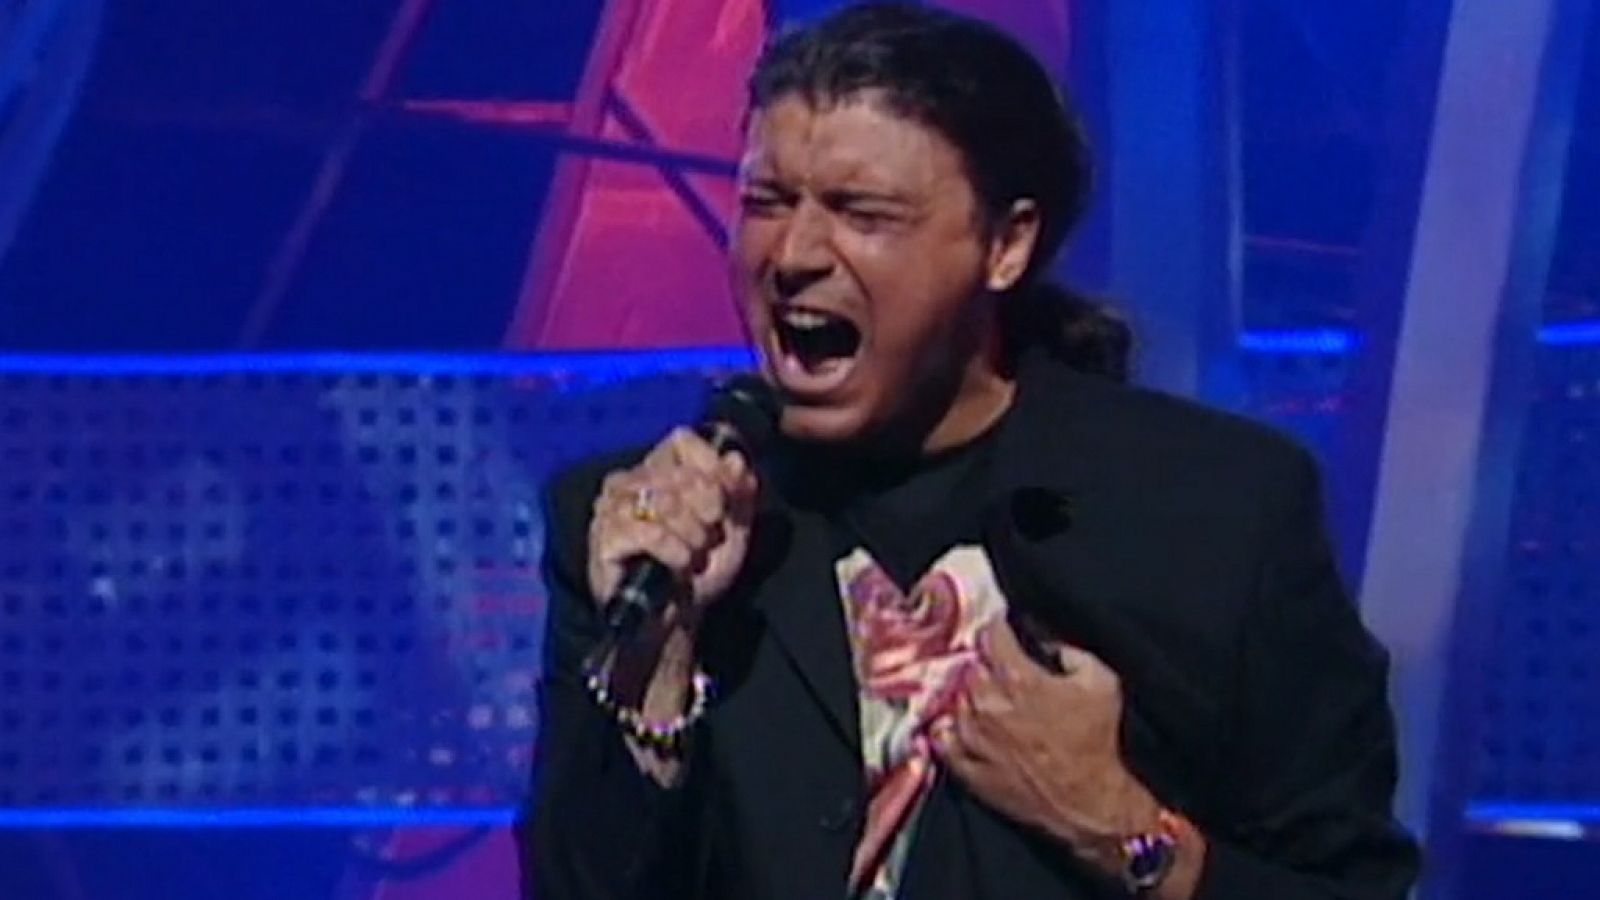 Festival de Eurovisión 1996 - Antonio Carbonell cantó "¡Ay, qué deseo!"